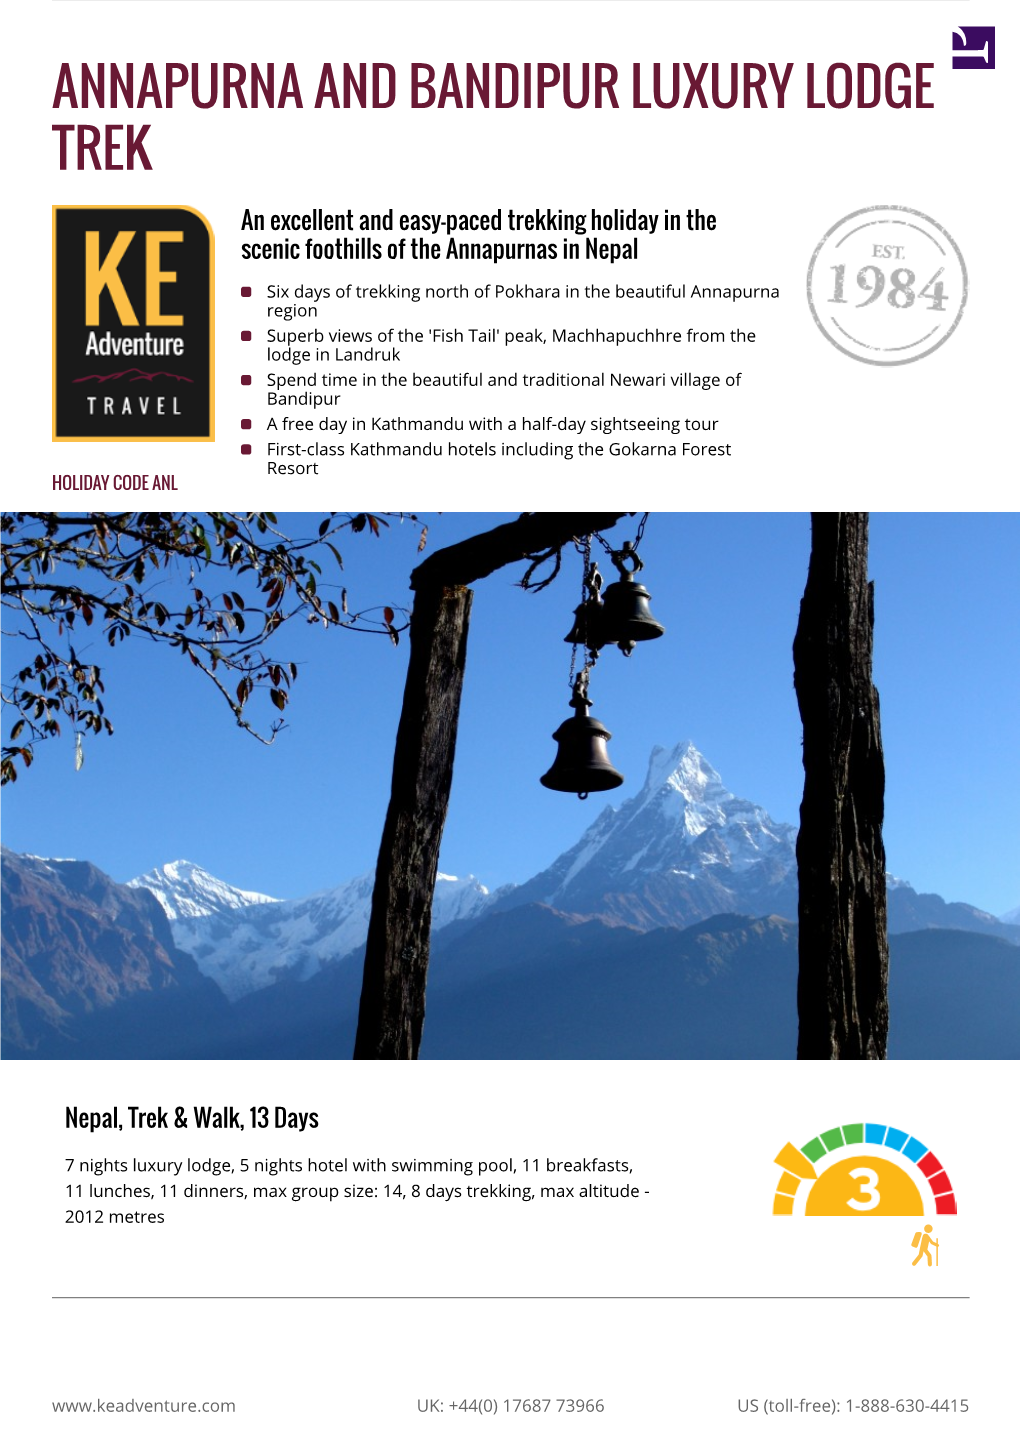 Annapurna and Everest Luxury Lodge Trek